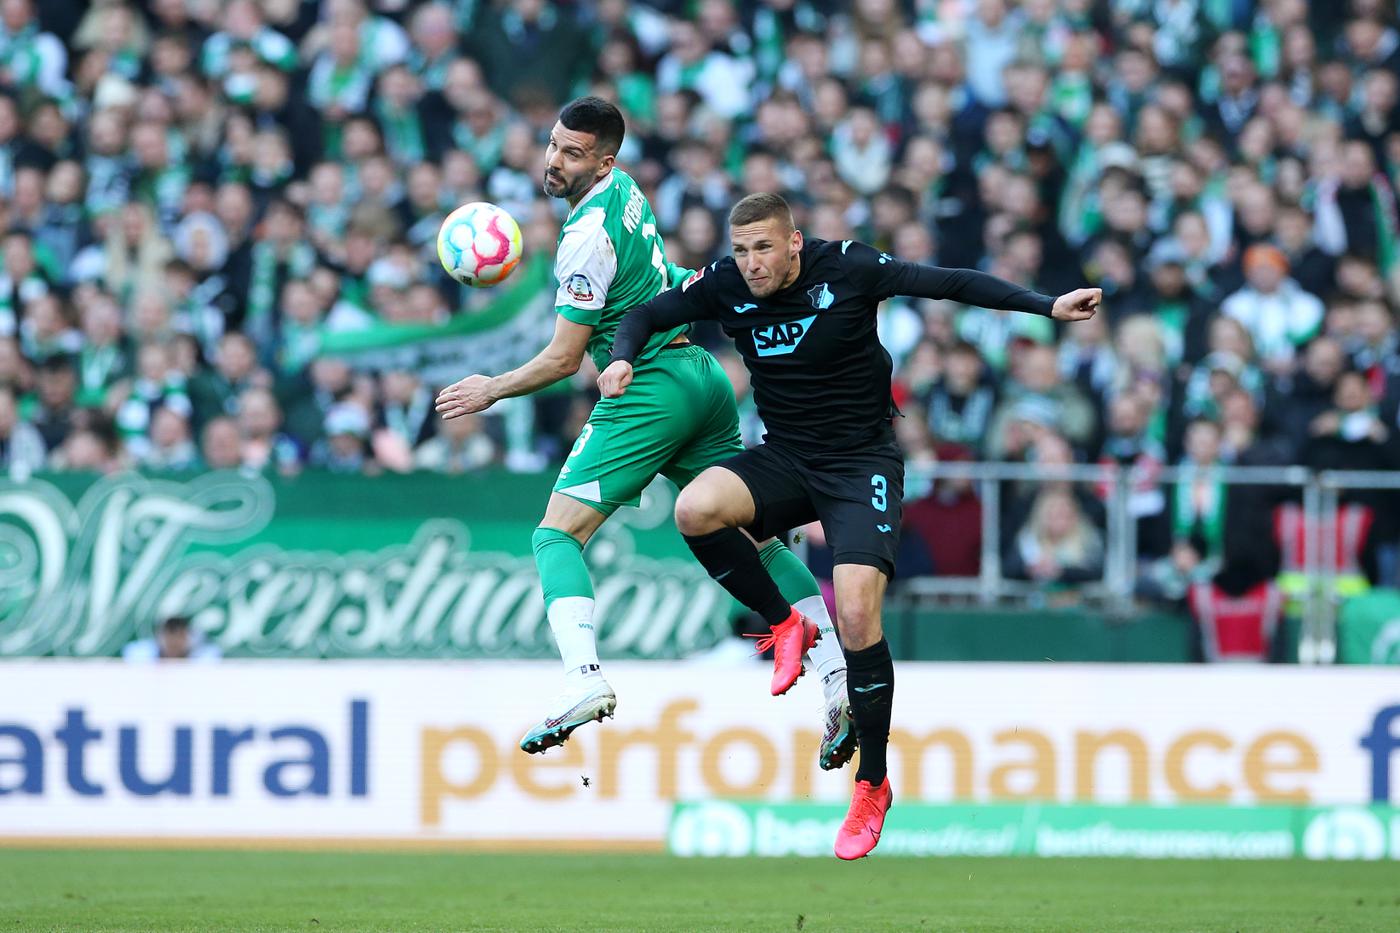 Werder Bremen - Hoffenheim - 1:2. Deutsche Meisterschaft, 26. Runde. Spielbericht, Statistiken